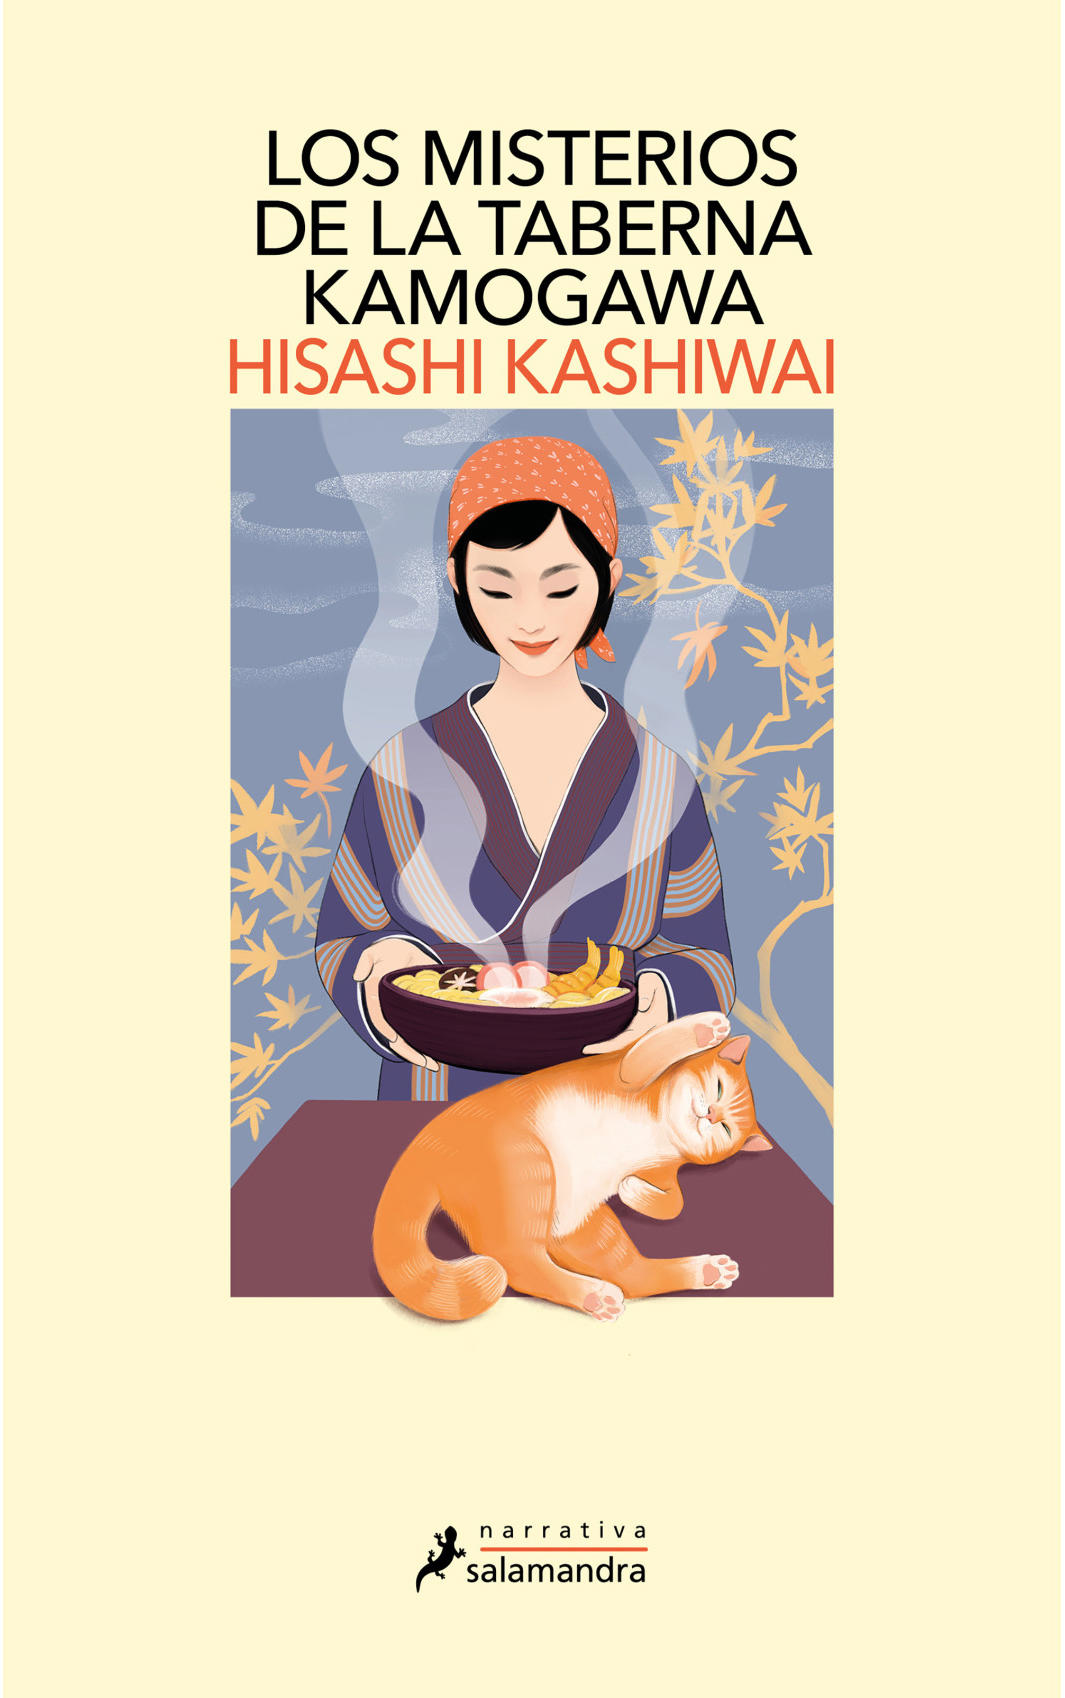 Portada de libro con mujer sosteniendo un plato de comida y gato